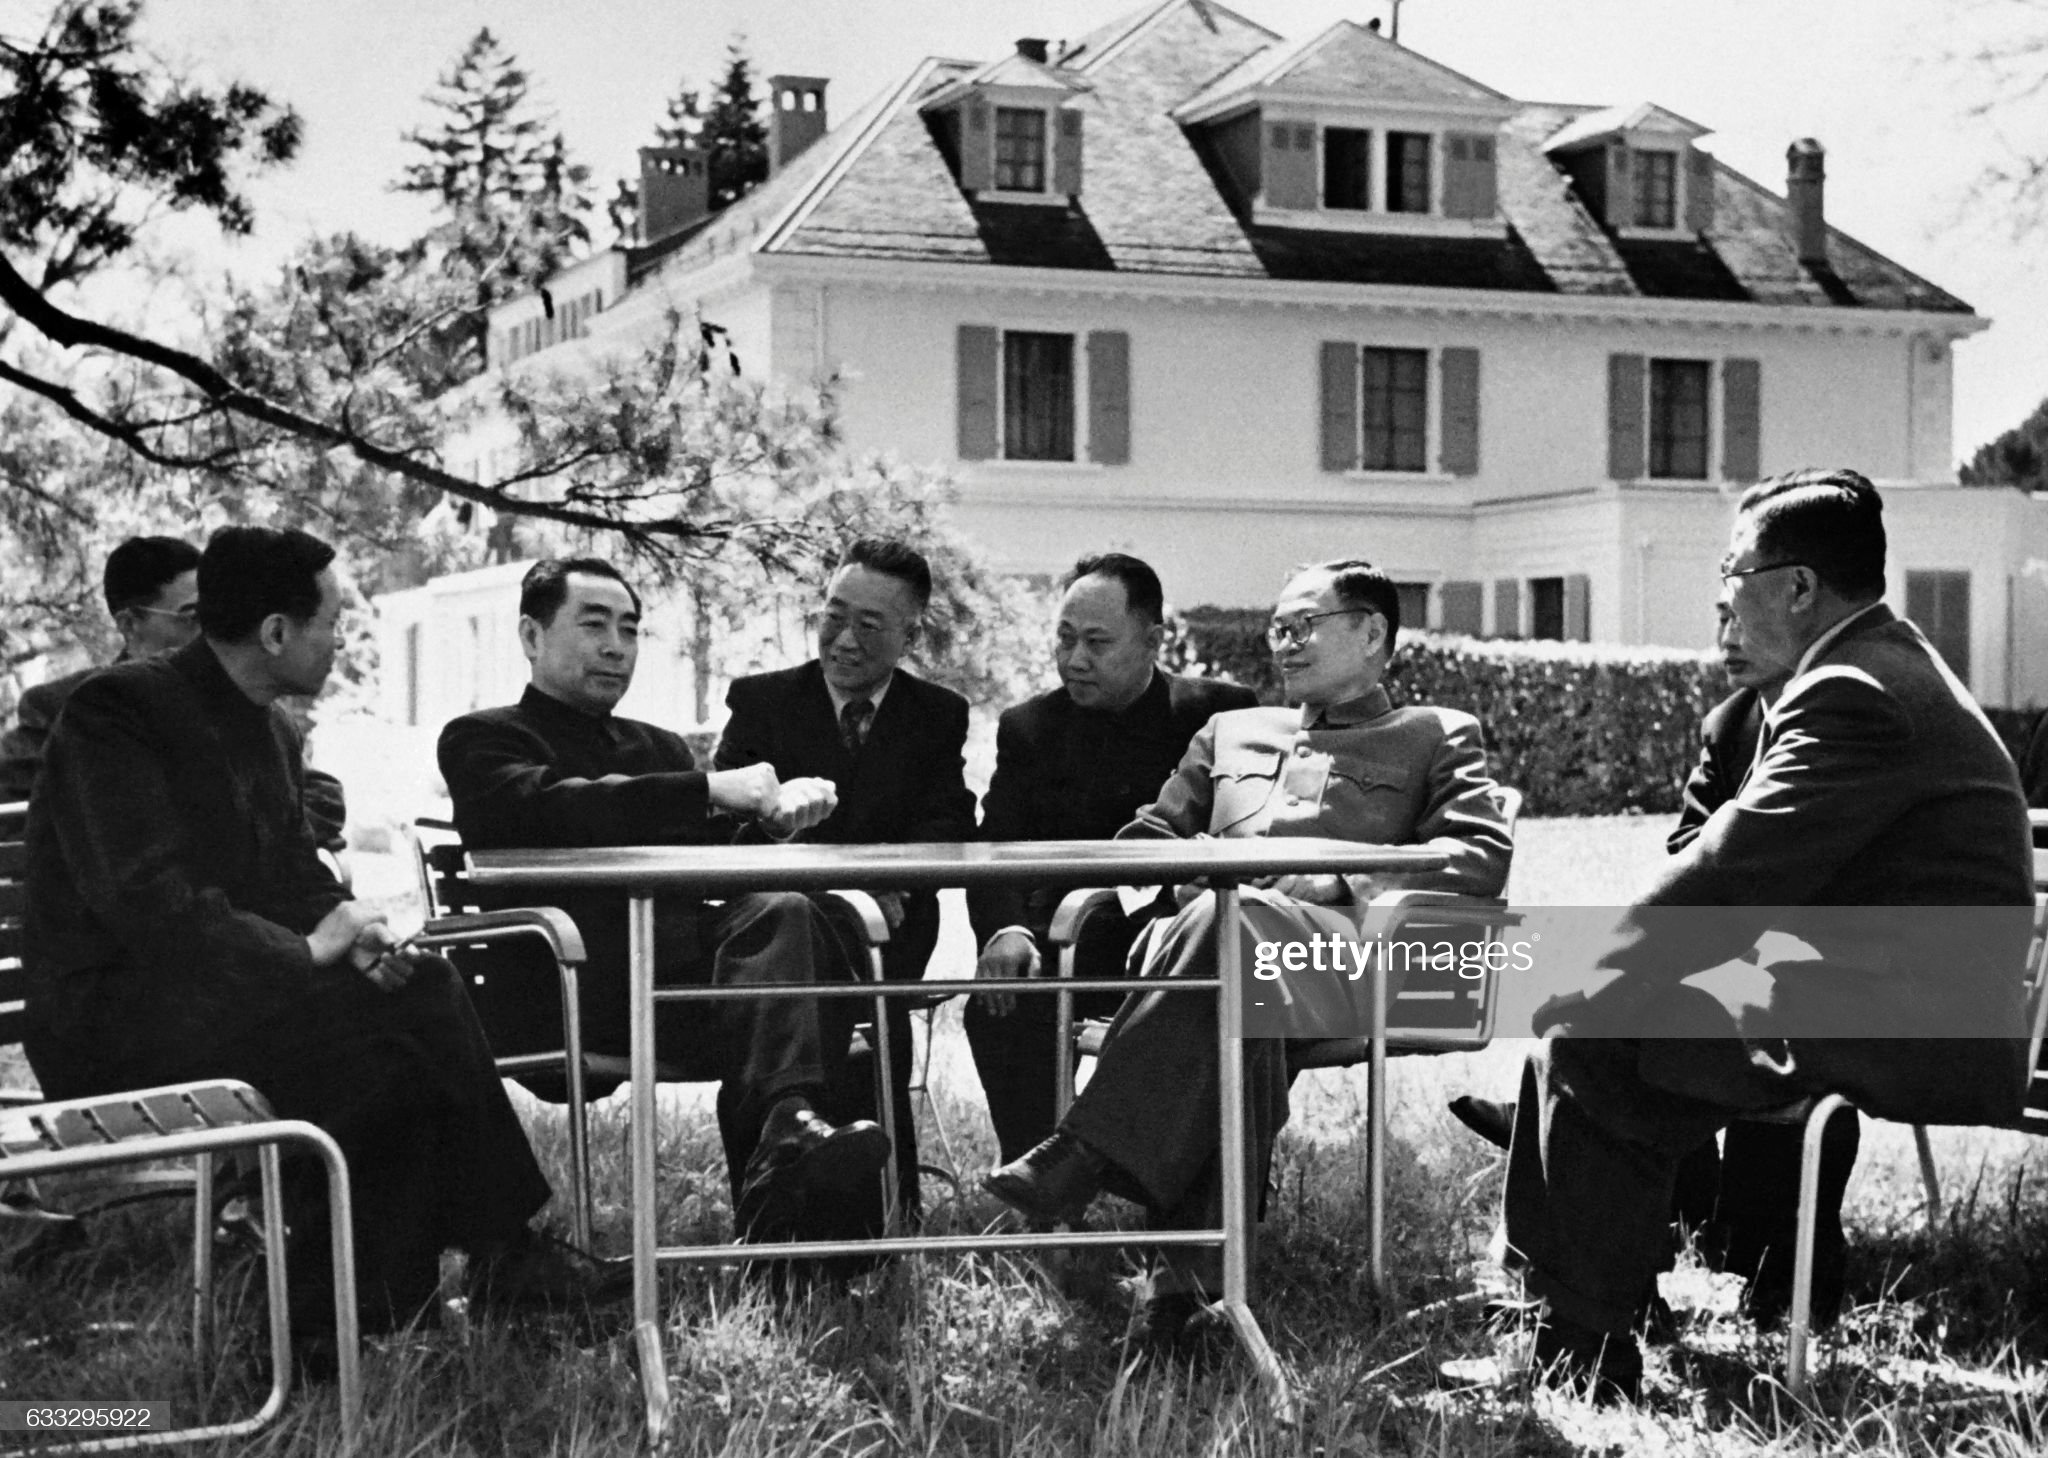 Tài liệu giải mật: Các cuộc họp bên lề Hội nghị Geneva 1954